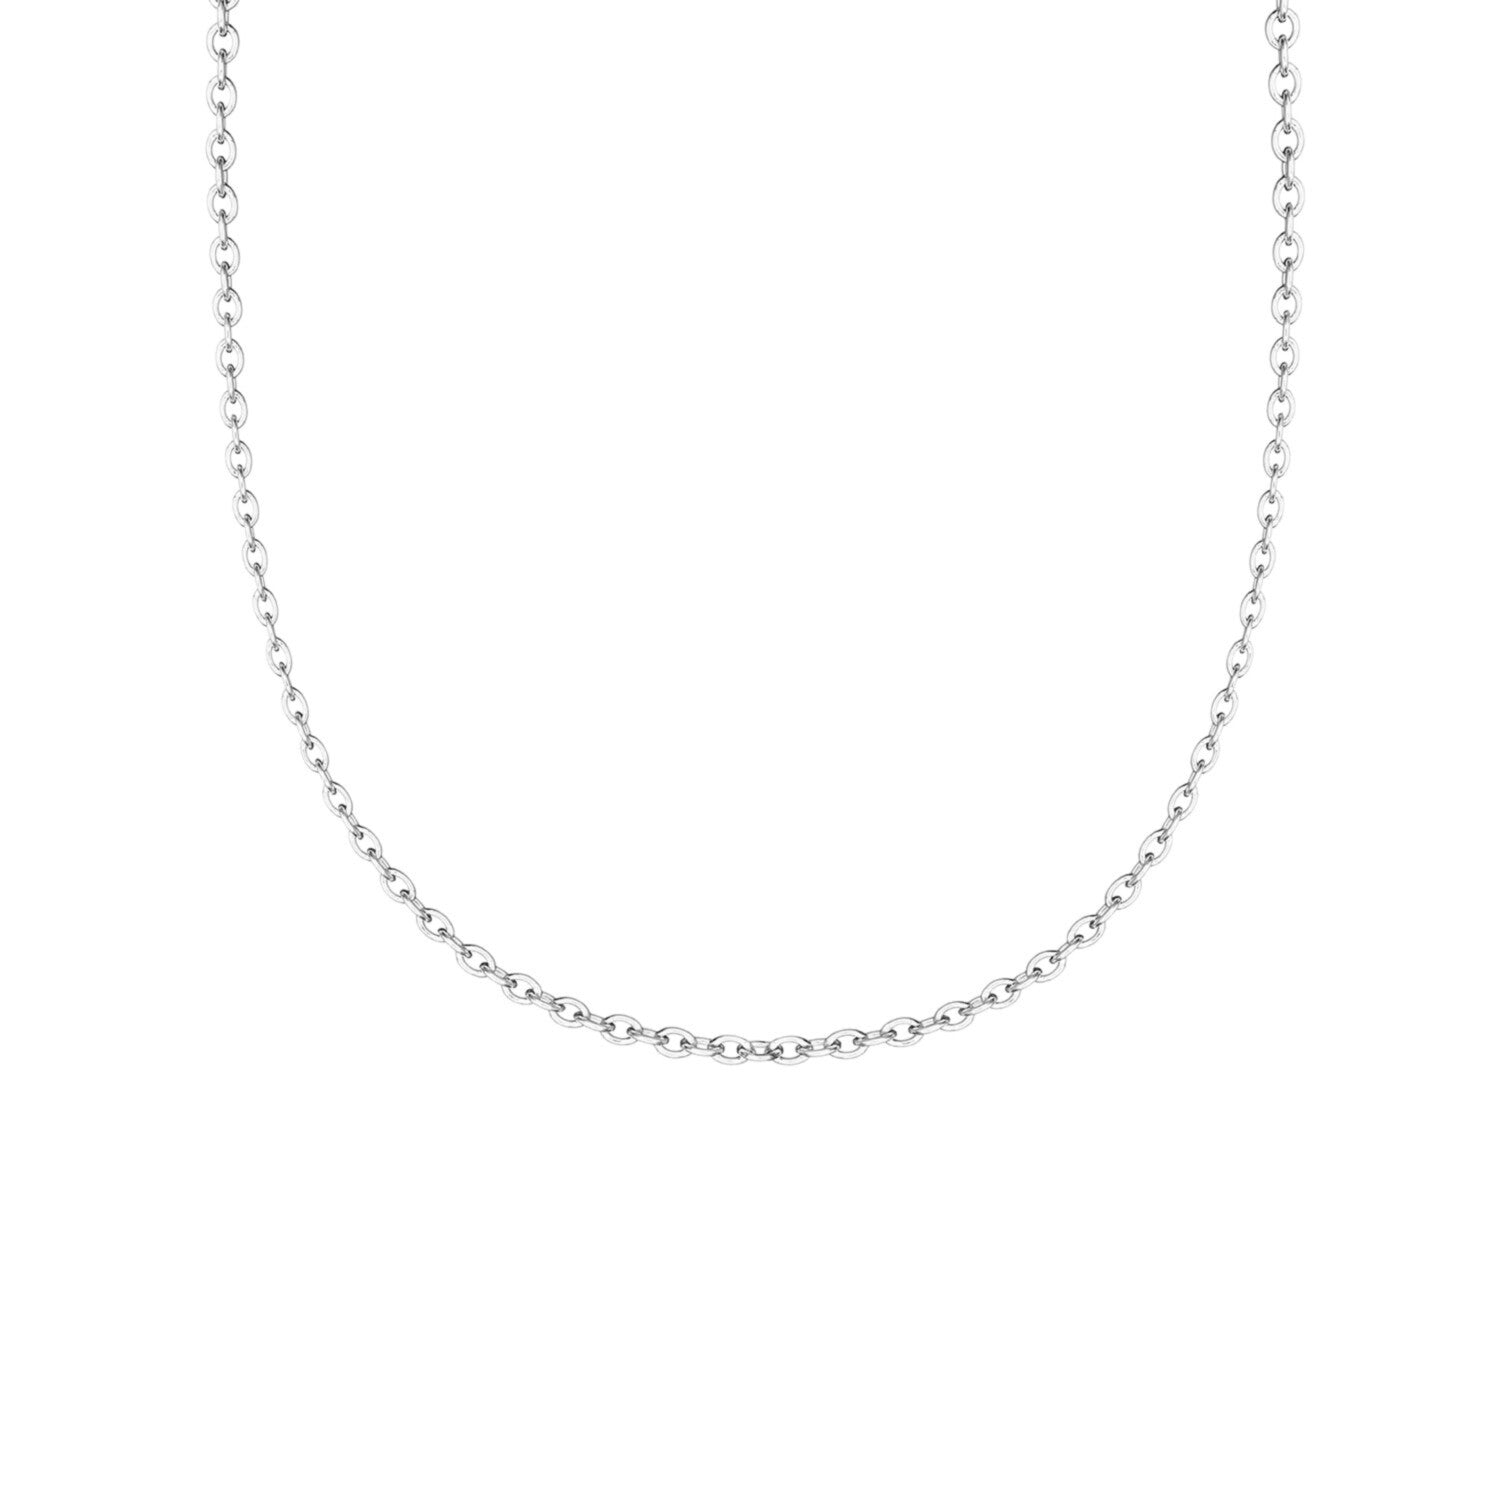 Tacori Silver Chain - 18 inches